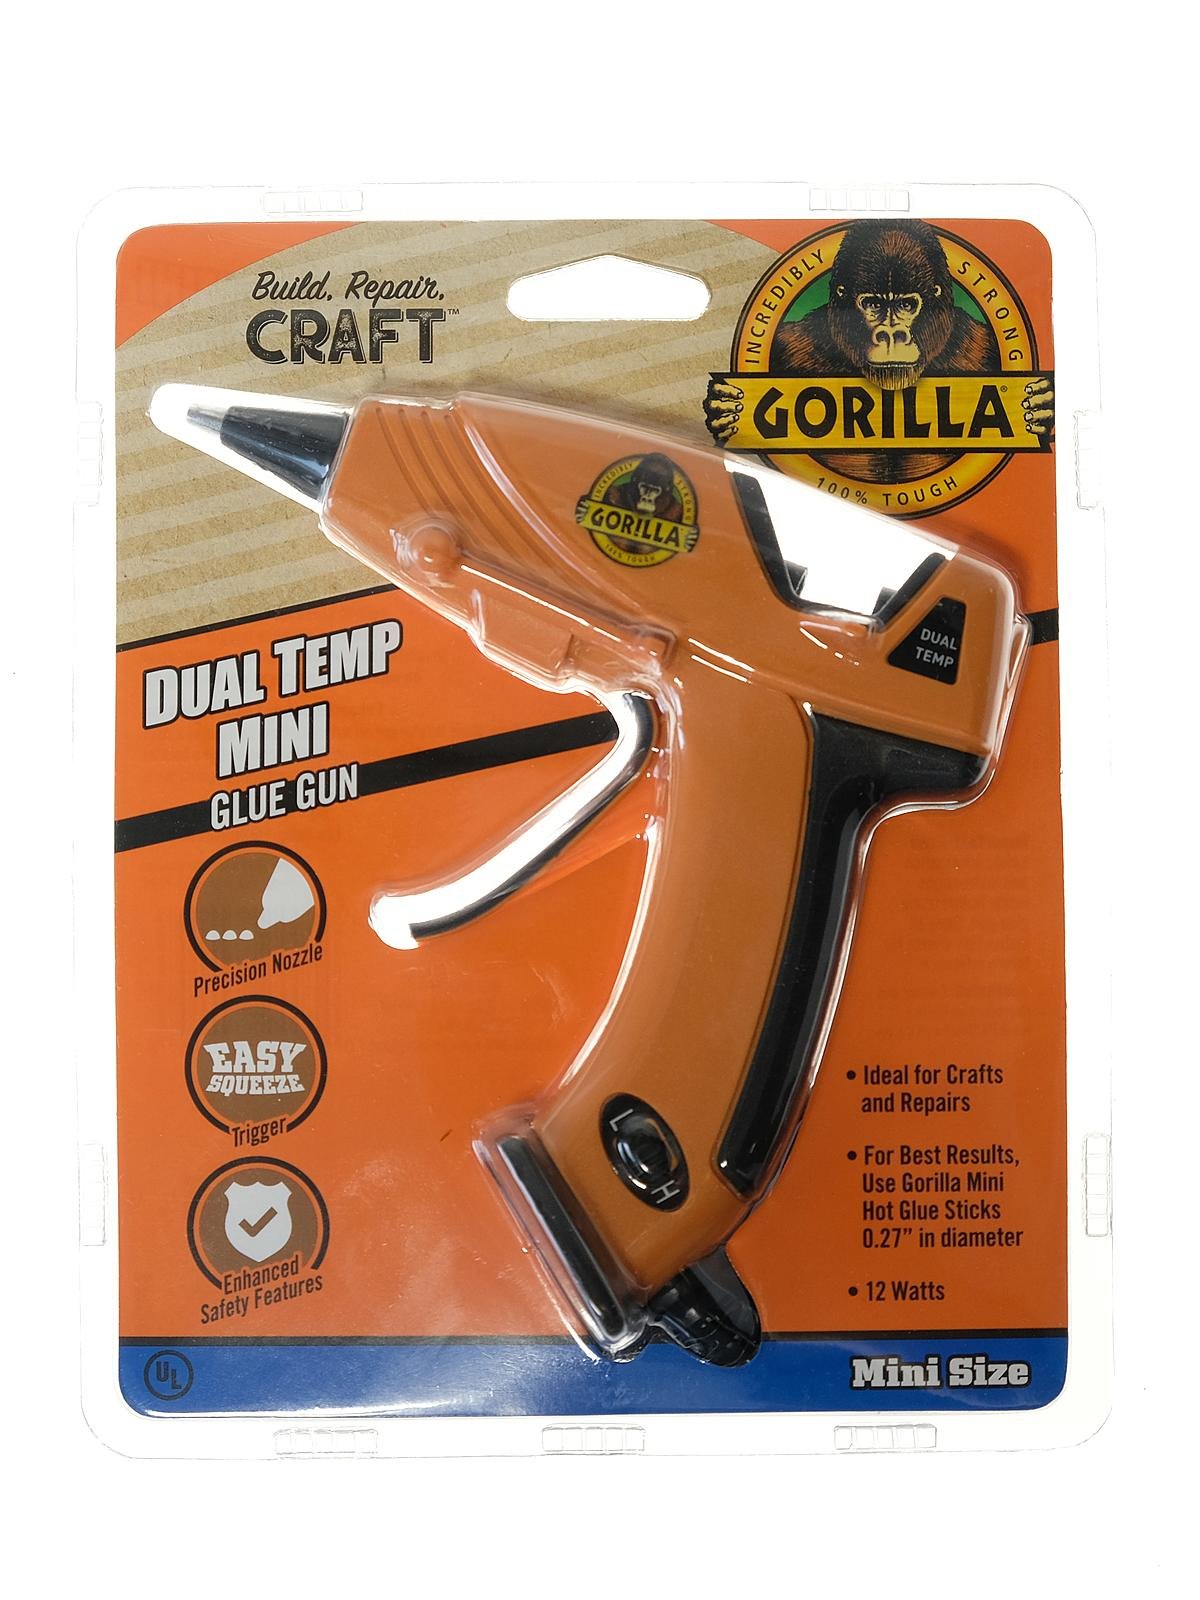 The Gorilla Glue Company Hot Glue Gun